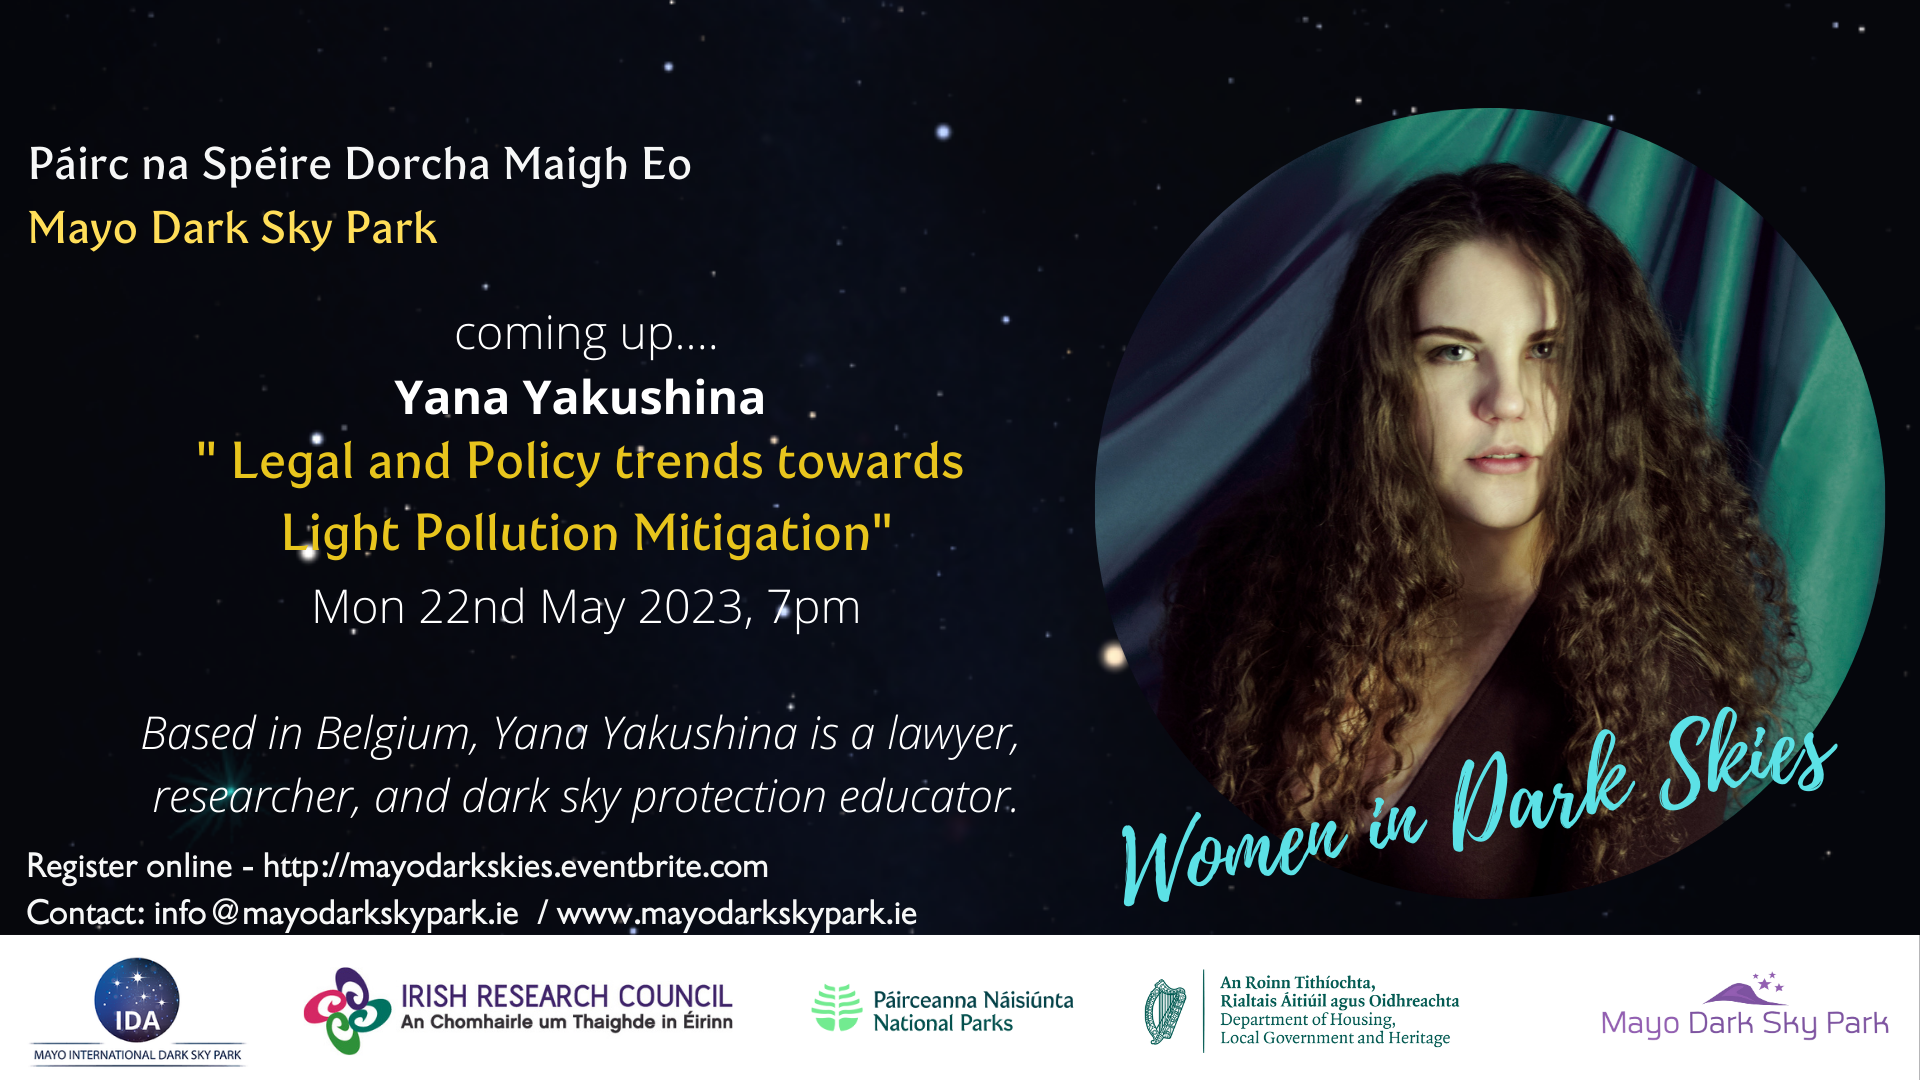 Women in Dark Skies – Women in Dark Skies – Next speaker Yana Yakushina